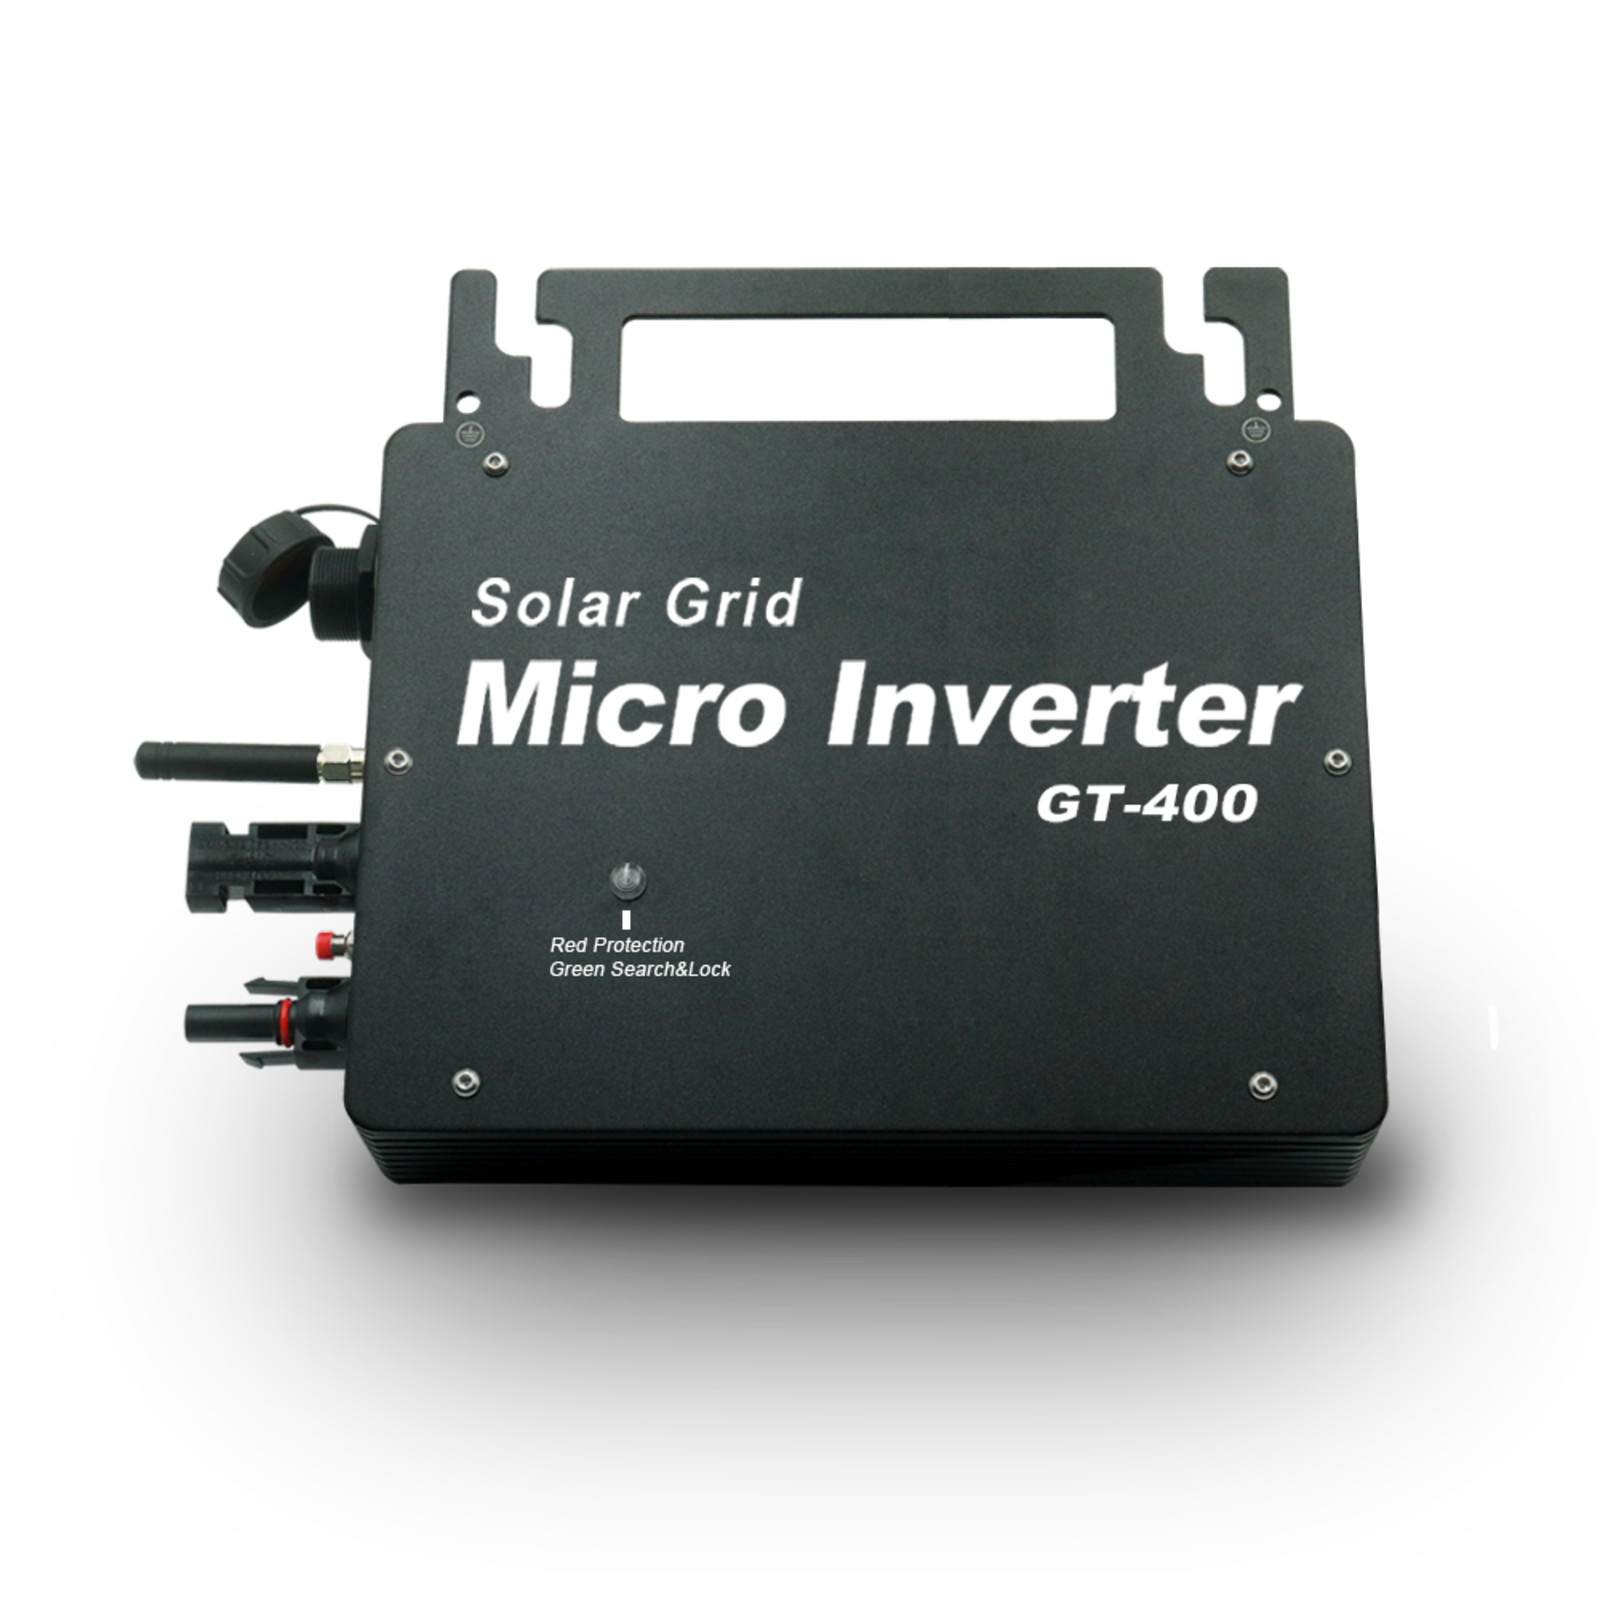 Solar Mikrowechselrichter 600W mit WLAN Kommunikation (Powerline), 119,00 €